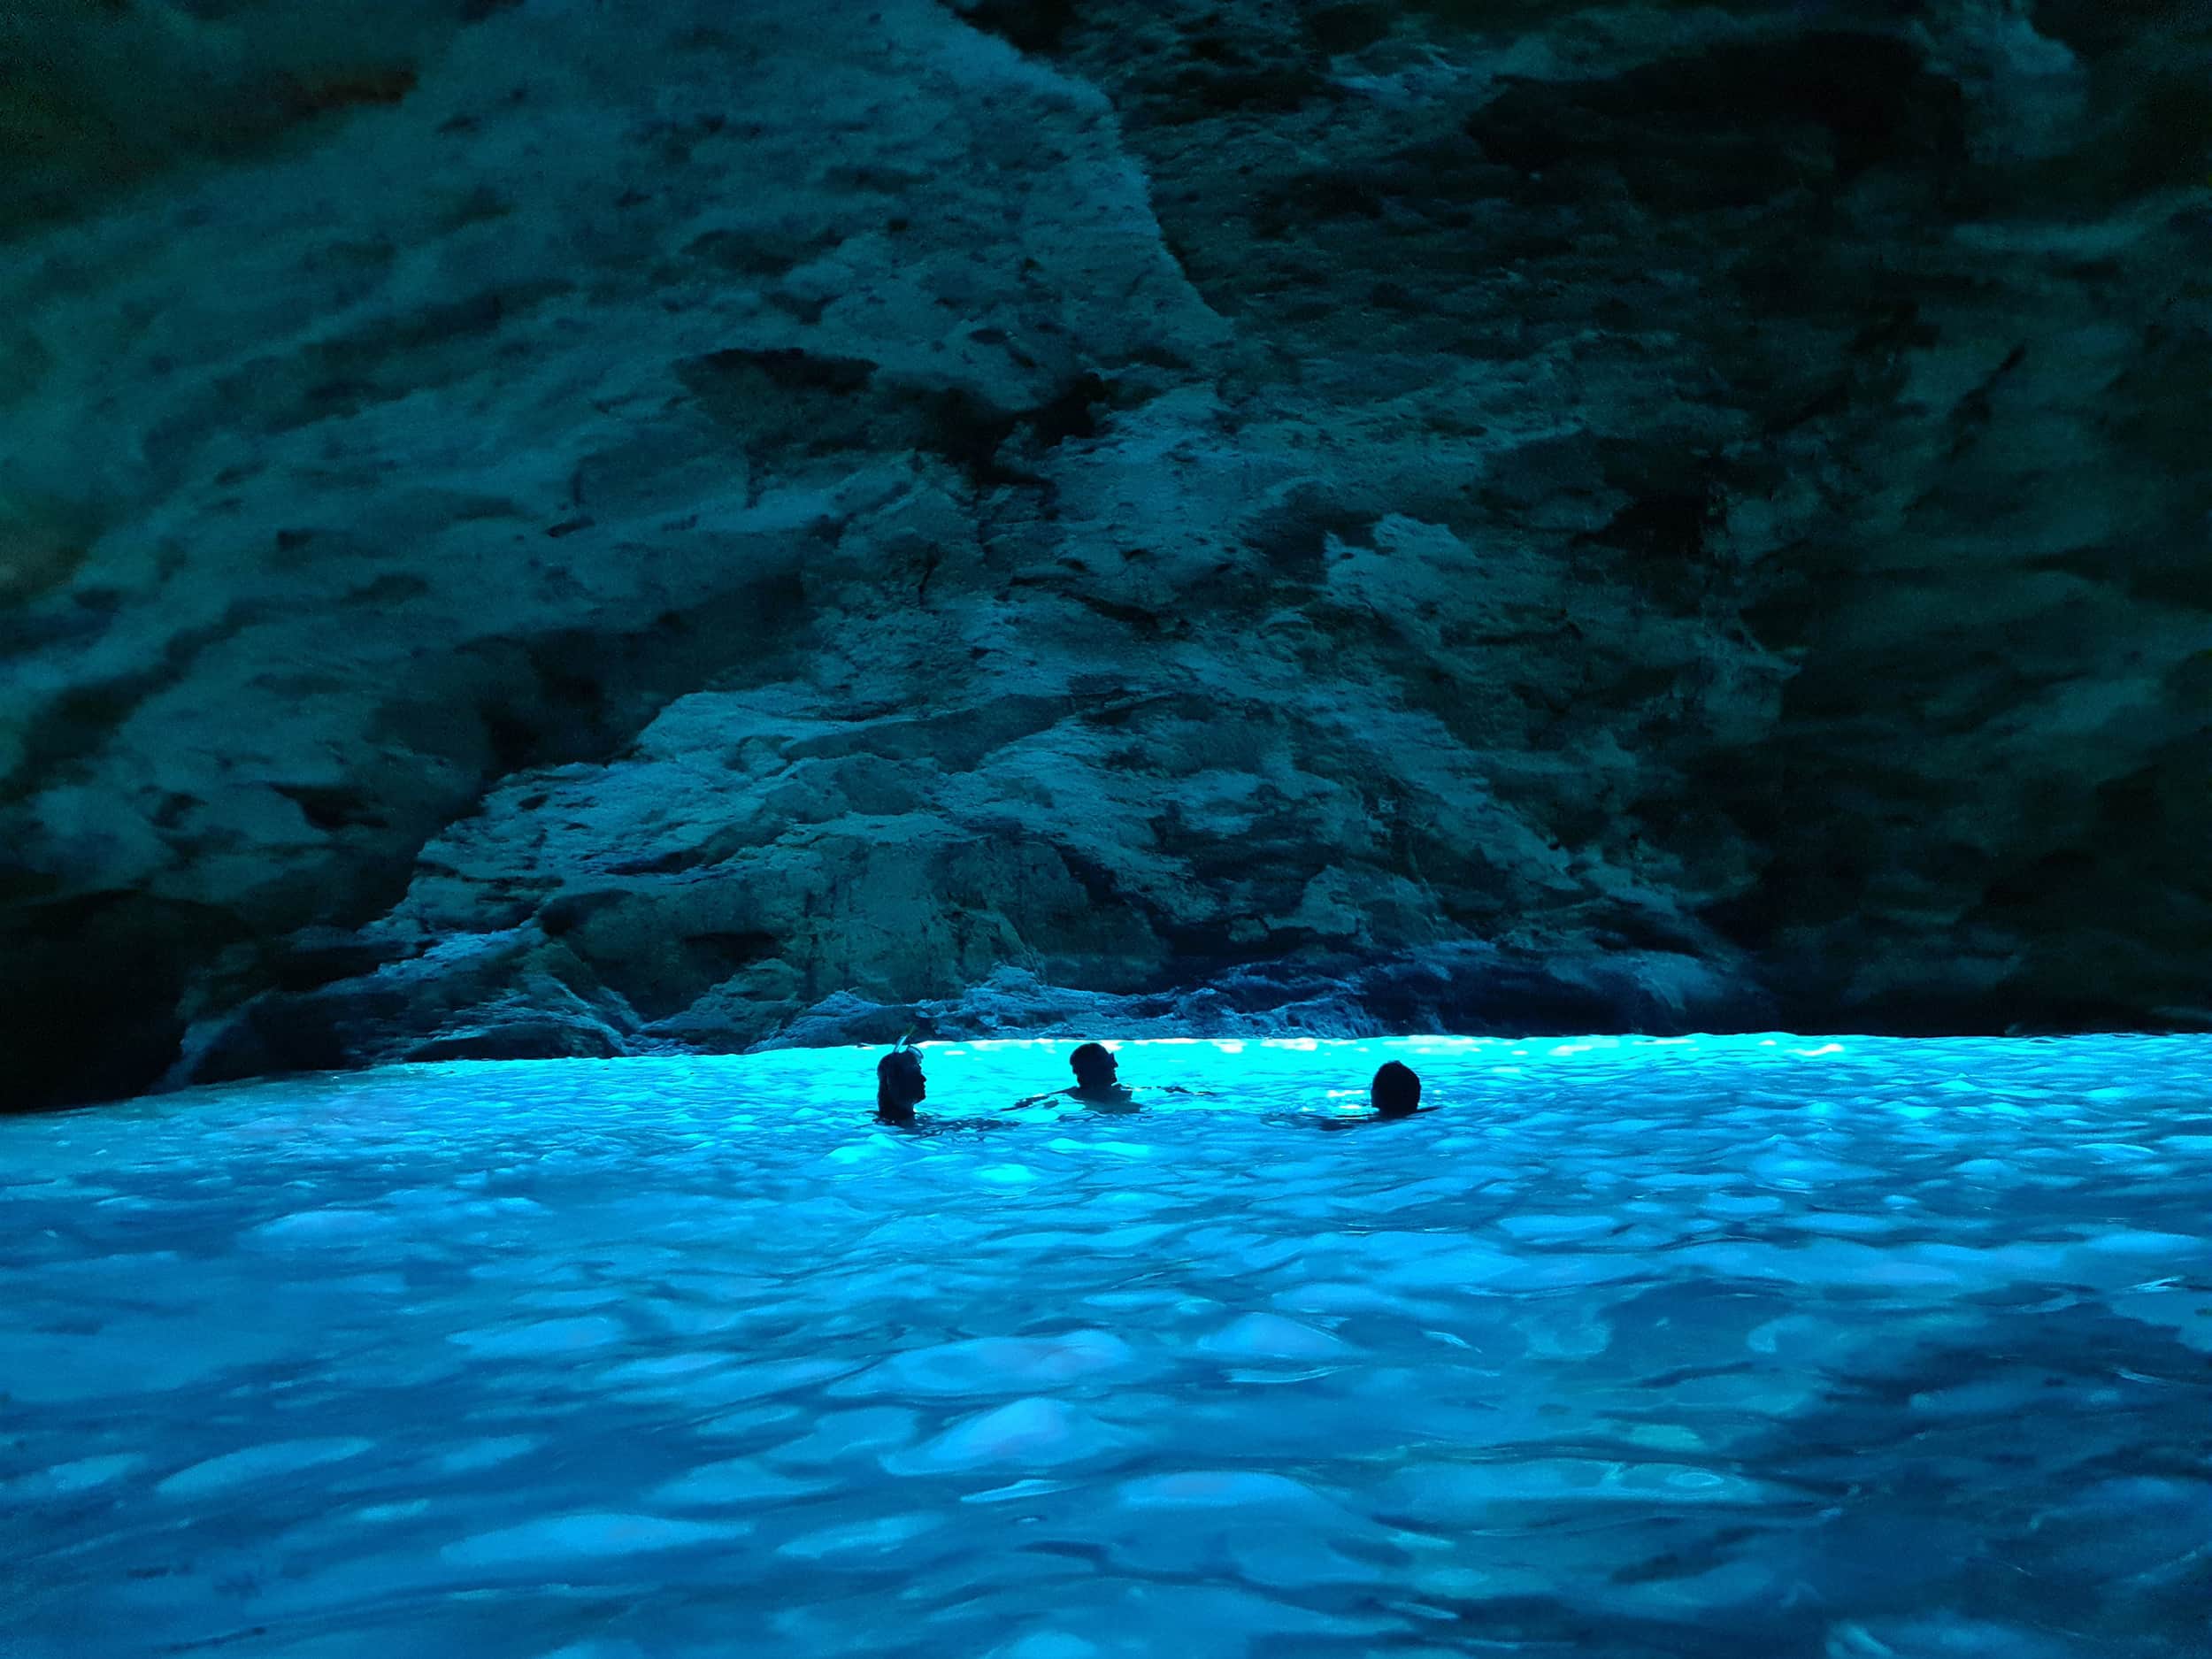 In foto la grotta Verde, un'ampia cavità illuminata di azzurro-verde dalla luce solare che filtra dal basso. Nell'acqua ci sono tre persone in controluce, che sembrano fare il bagno nella luce azzurra; è una delle grotte del Salento più belle.